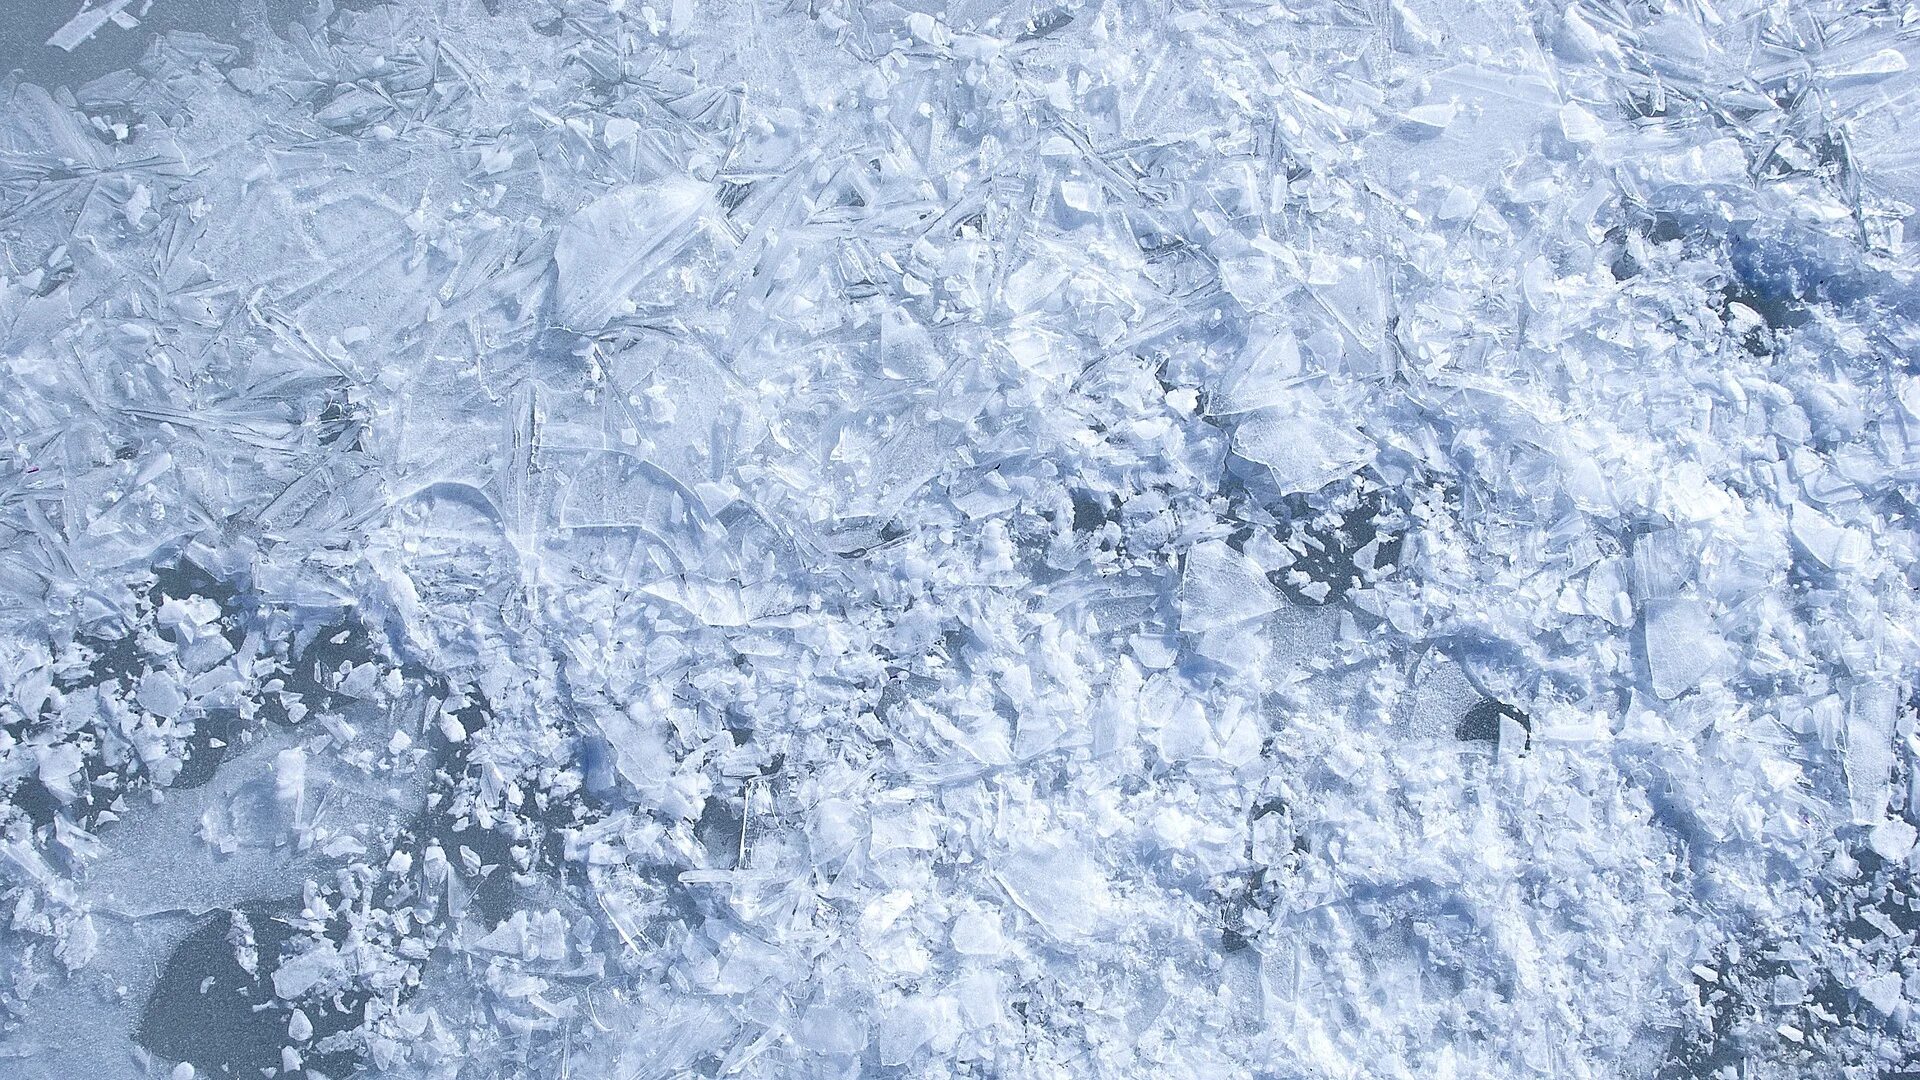 Эффект заморозки. Текстура льда. Фактура льда. Ледяной фон. Снег и лед текстура.